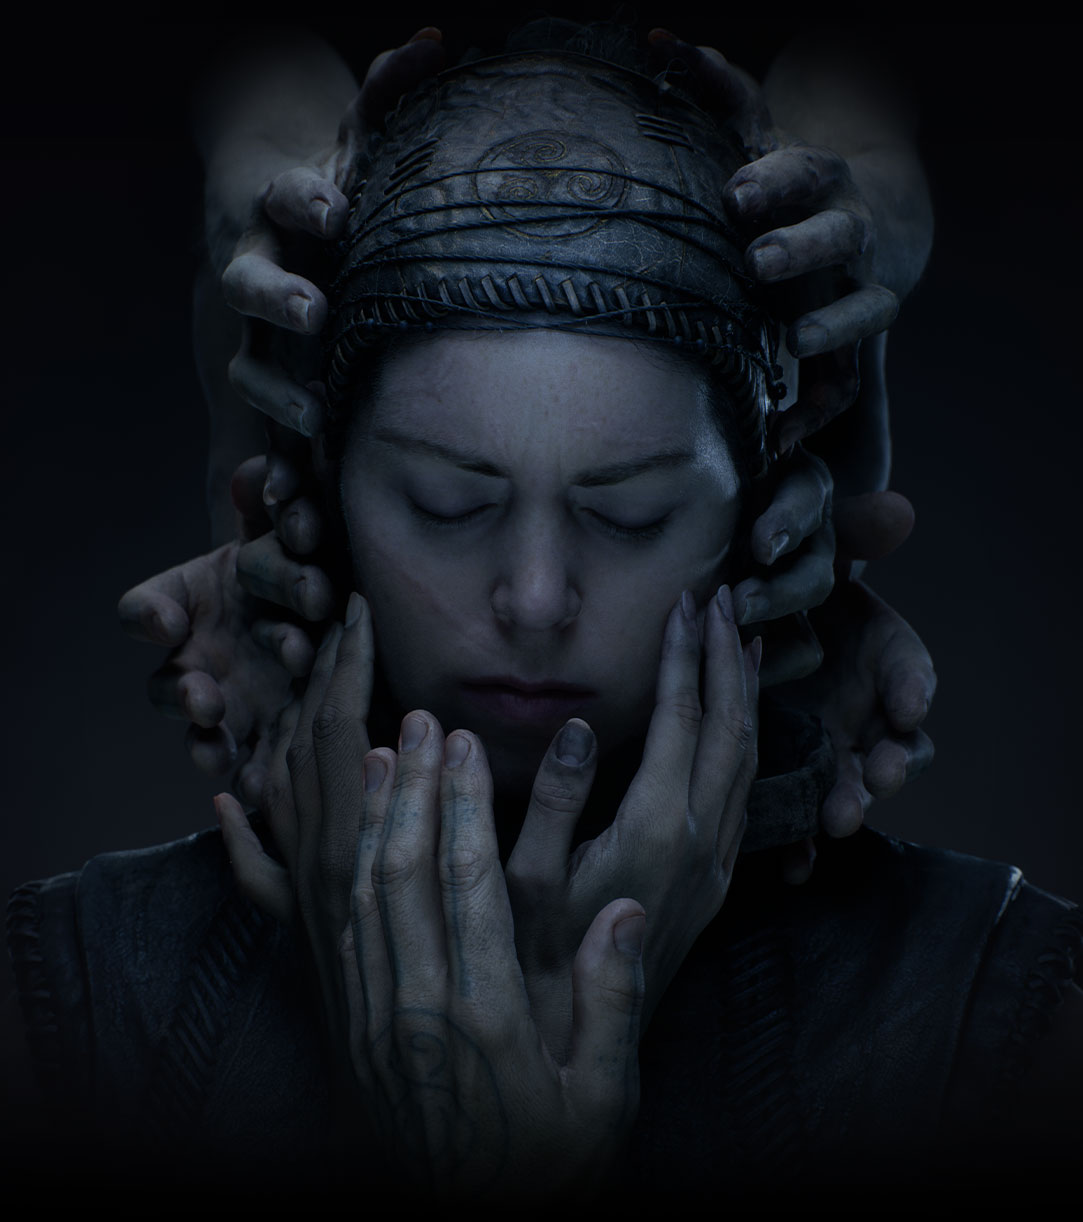 Una donna con abiti in pelle cuciti a mano chiude gli occhi nel buio mentre delle mani cercano di toccarle il viso.